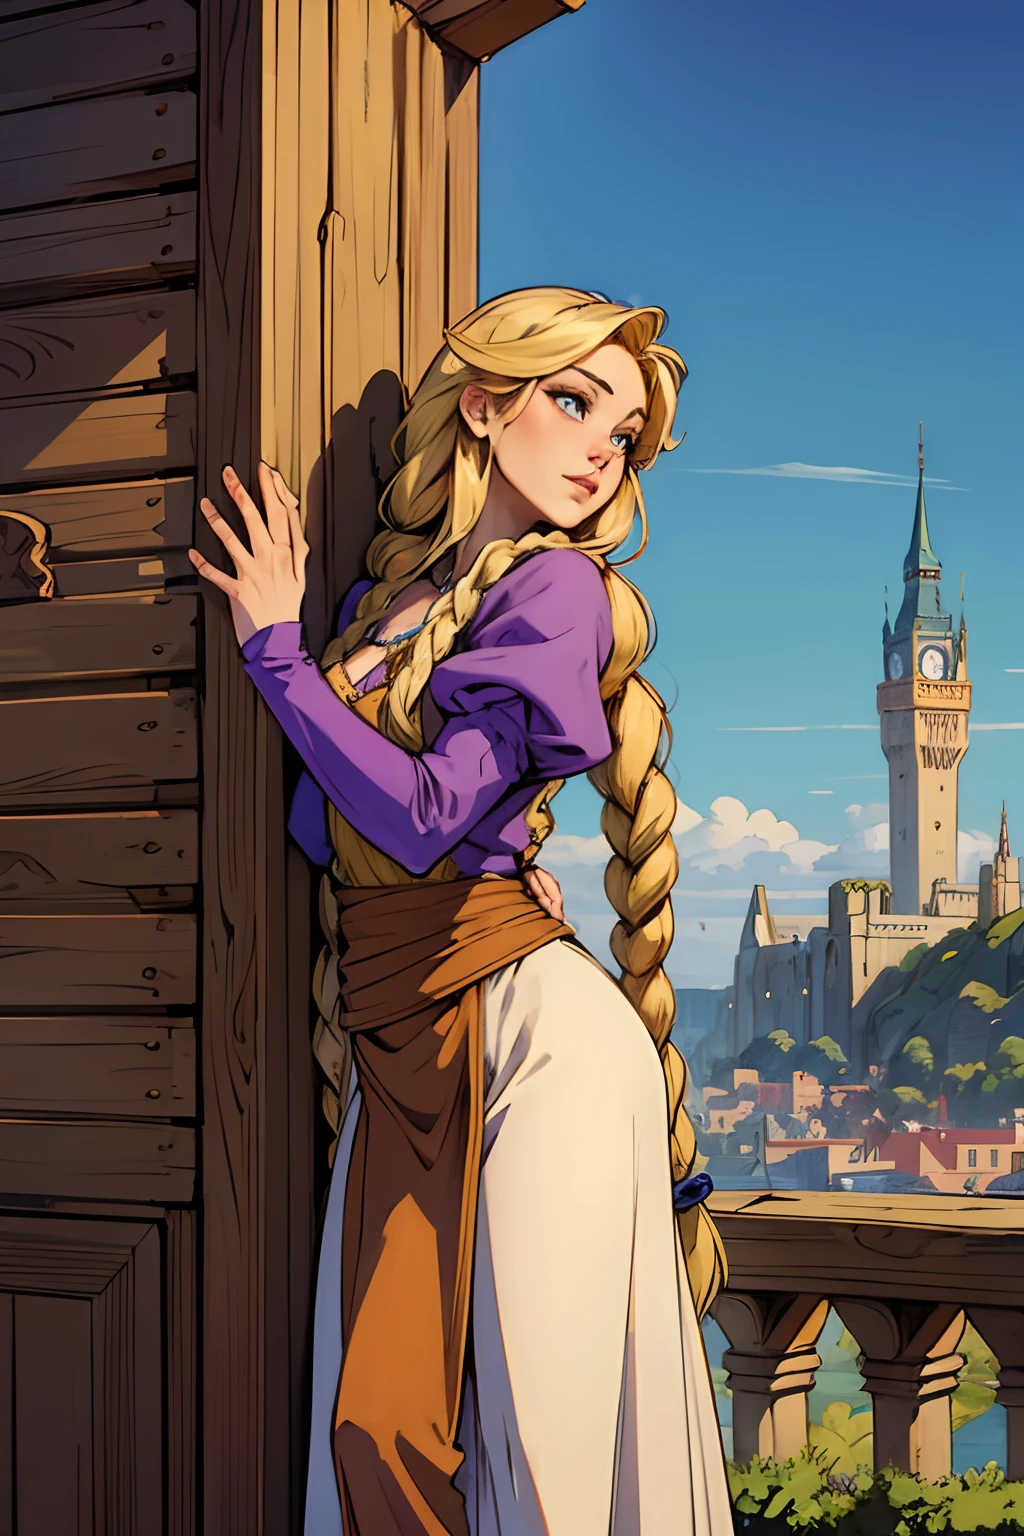 Arte inspirado no en el estilo de Arthur Adams., rapunzel, Rubia con sus largas trenzas esperando la llegada de su príncipe en lo alto de una torre